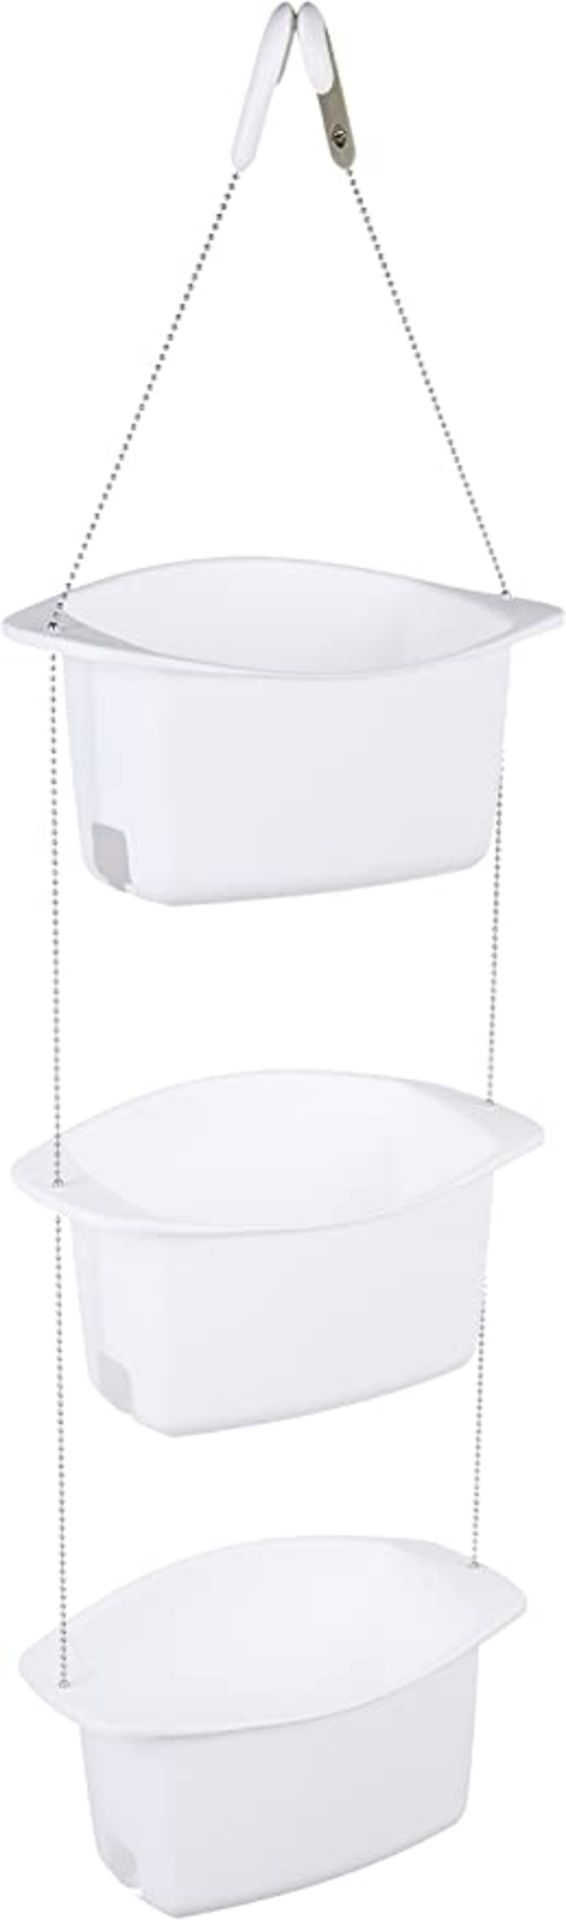 RRP - £12.41 Amazon Basics 3-Basket Adjustable Shower Caddy - White